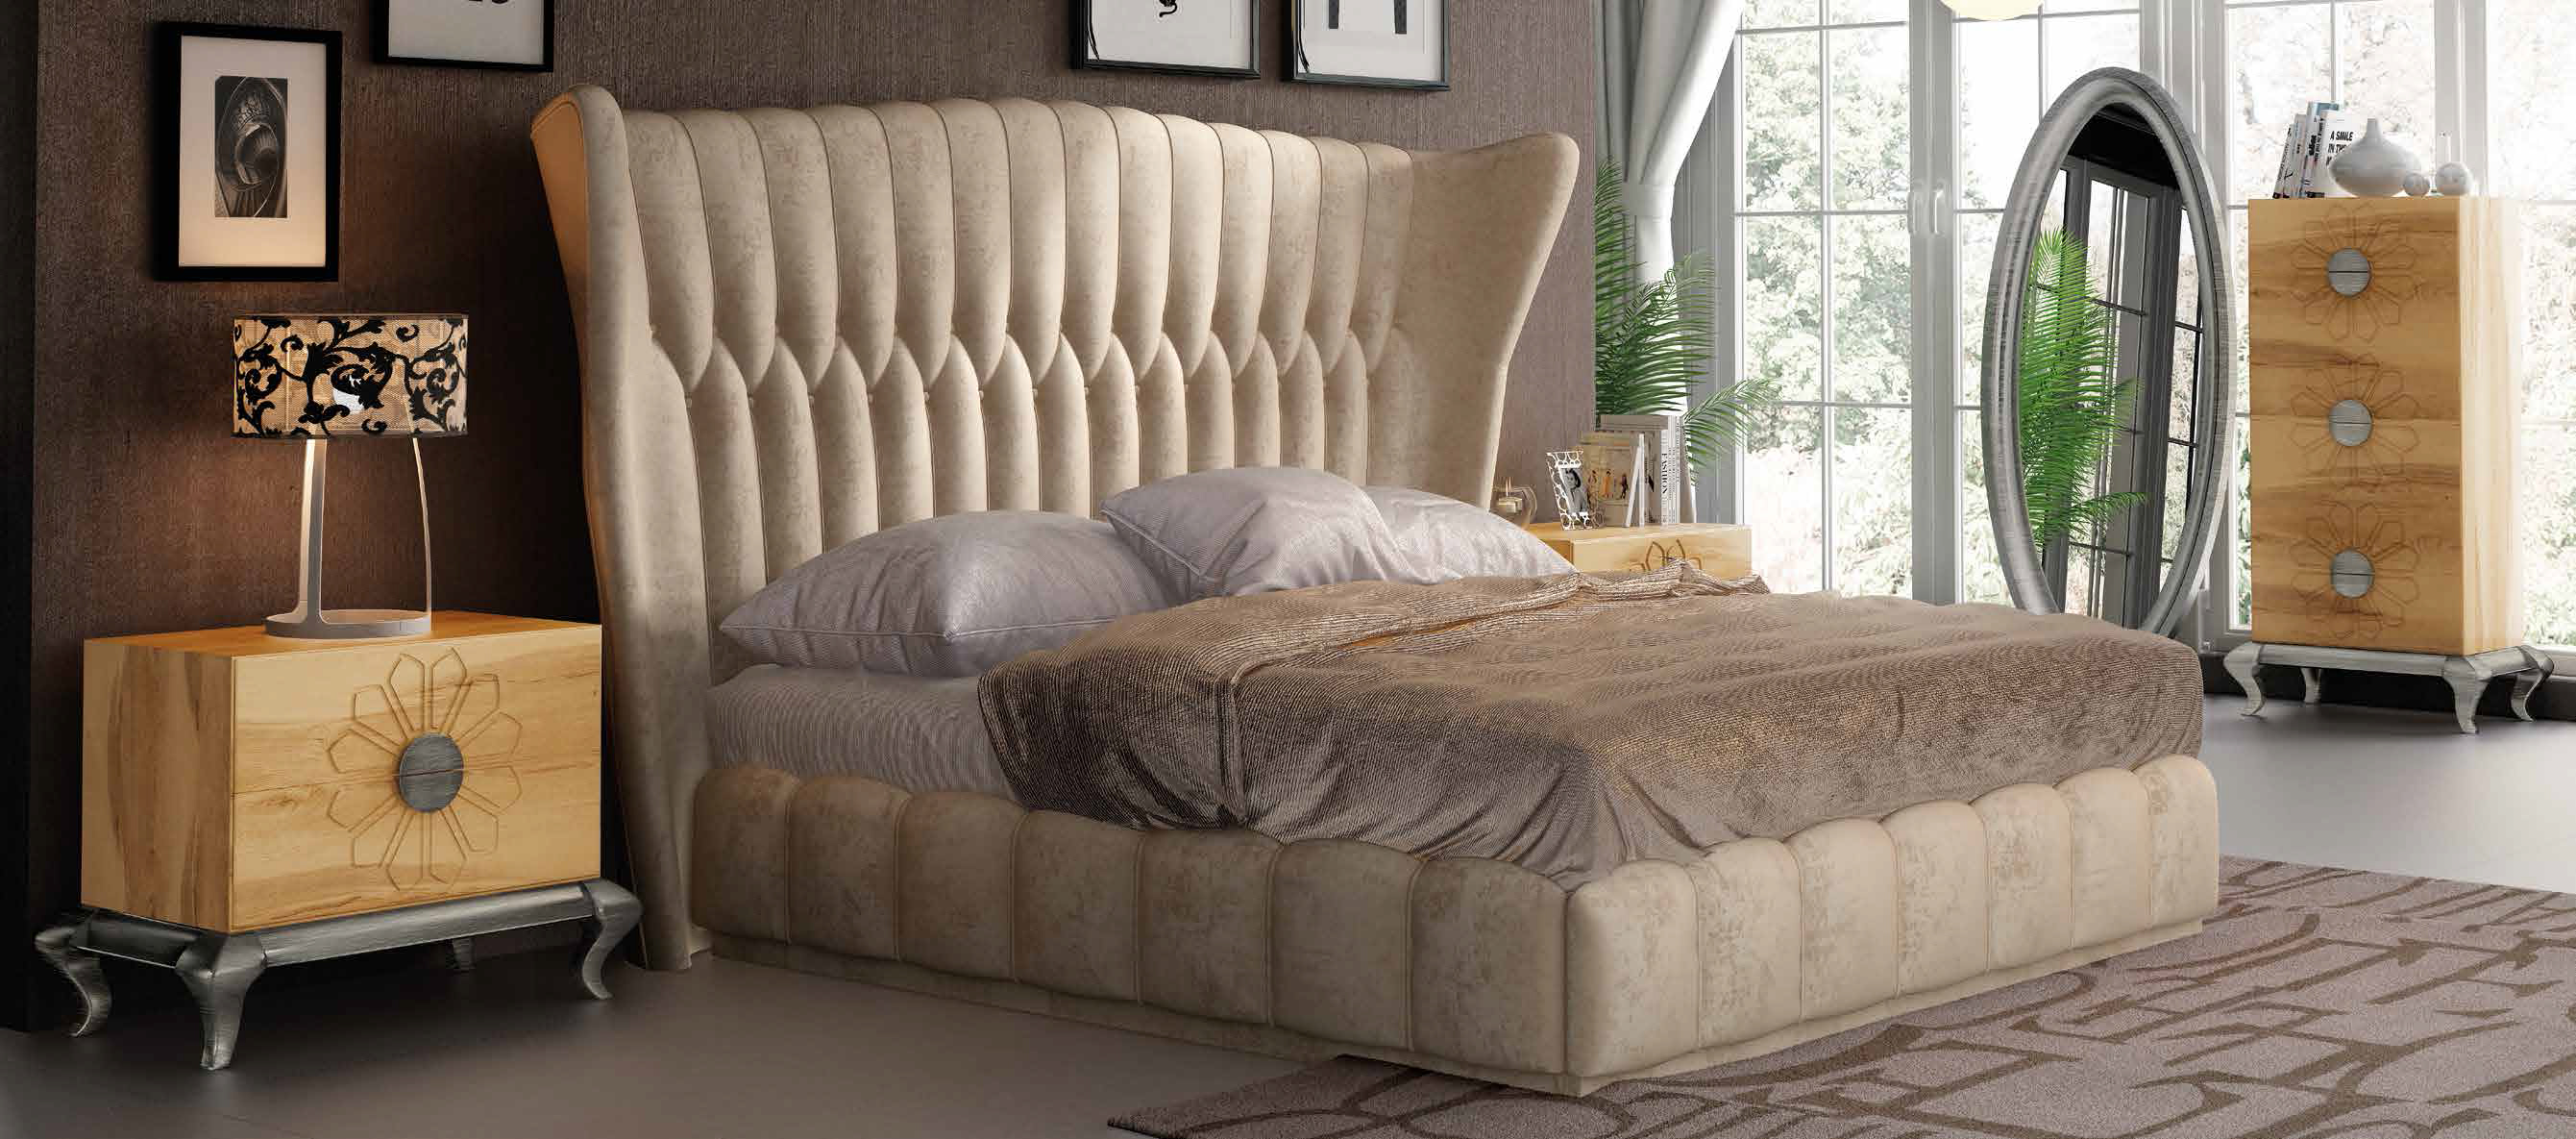 Bedroom Furniture Beds DOR 61